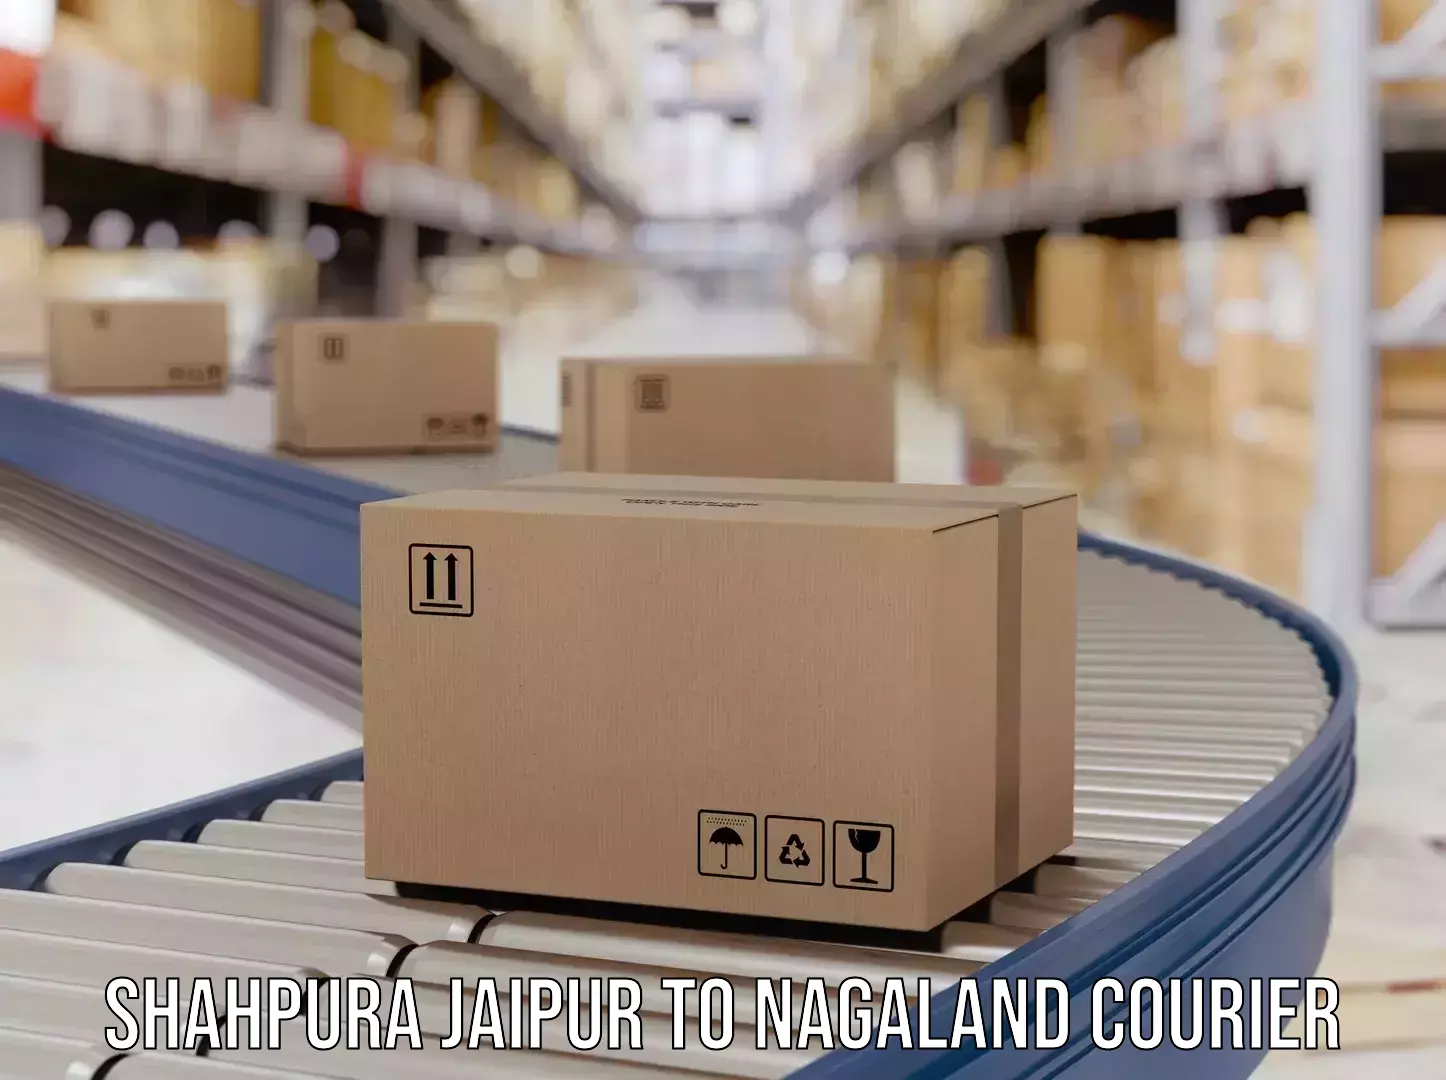 Efficient parcel tracking Shahpura Jaipur to Nagaland